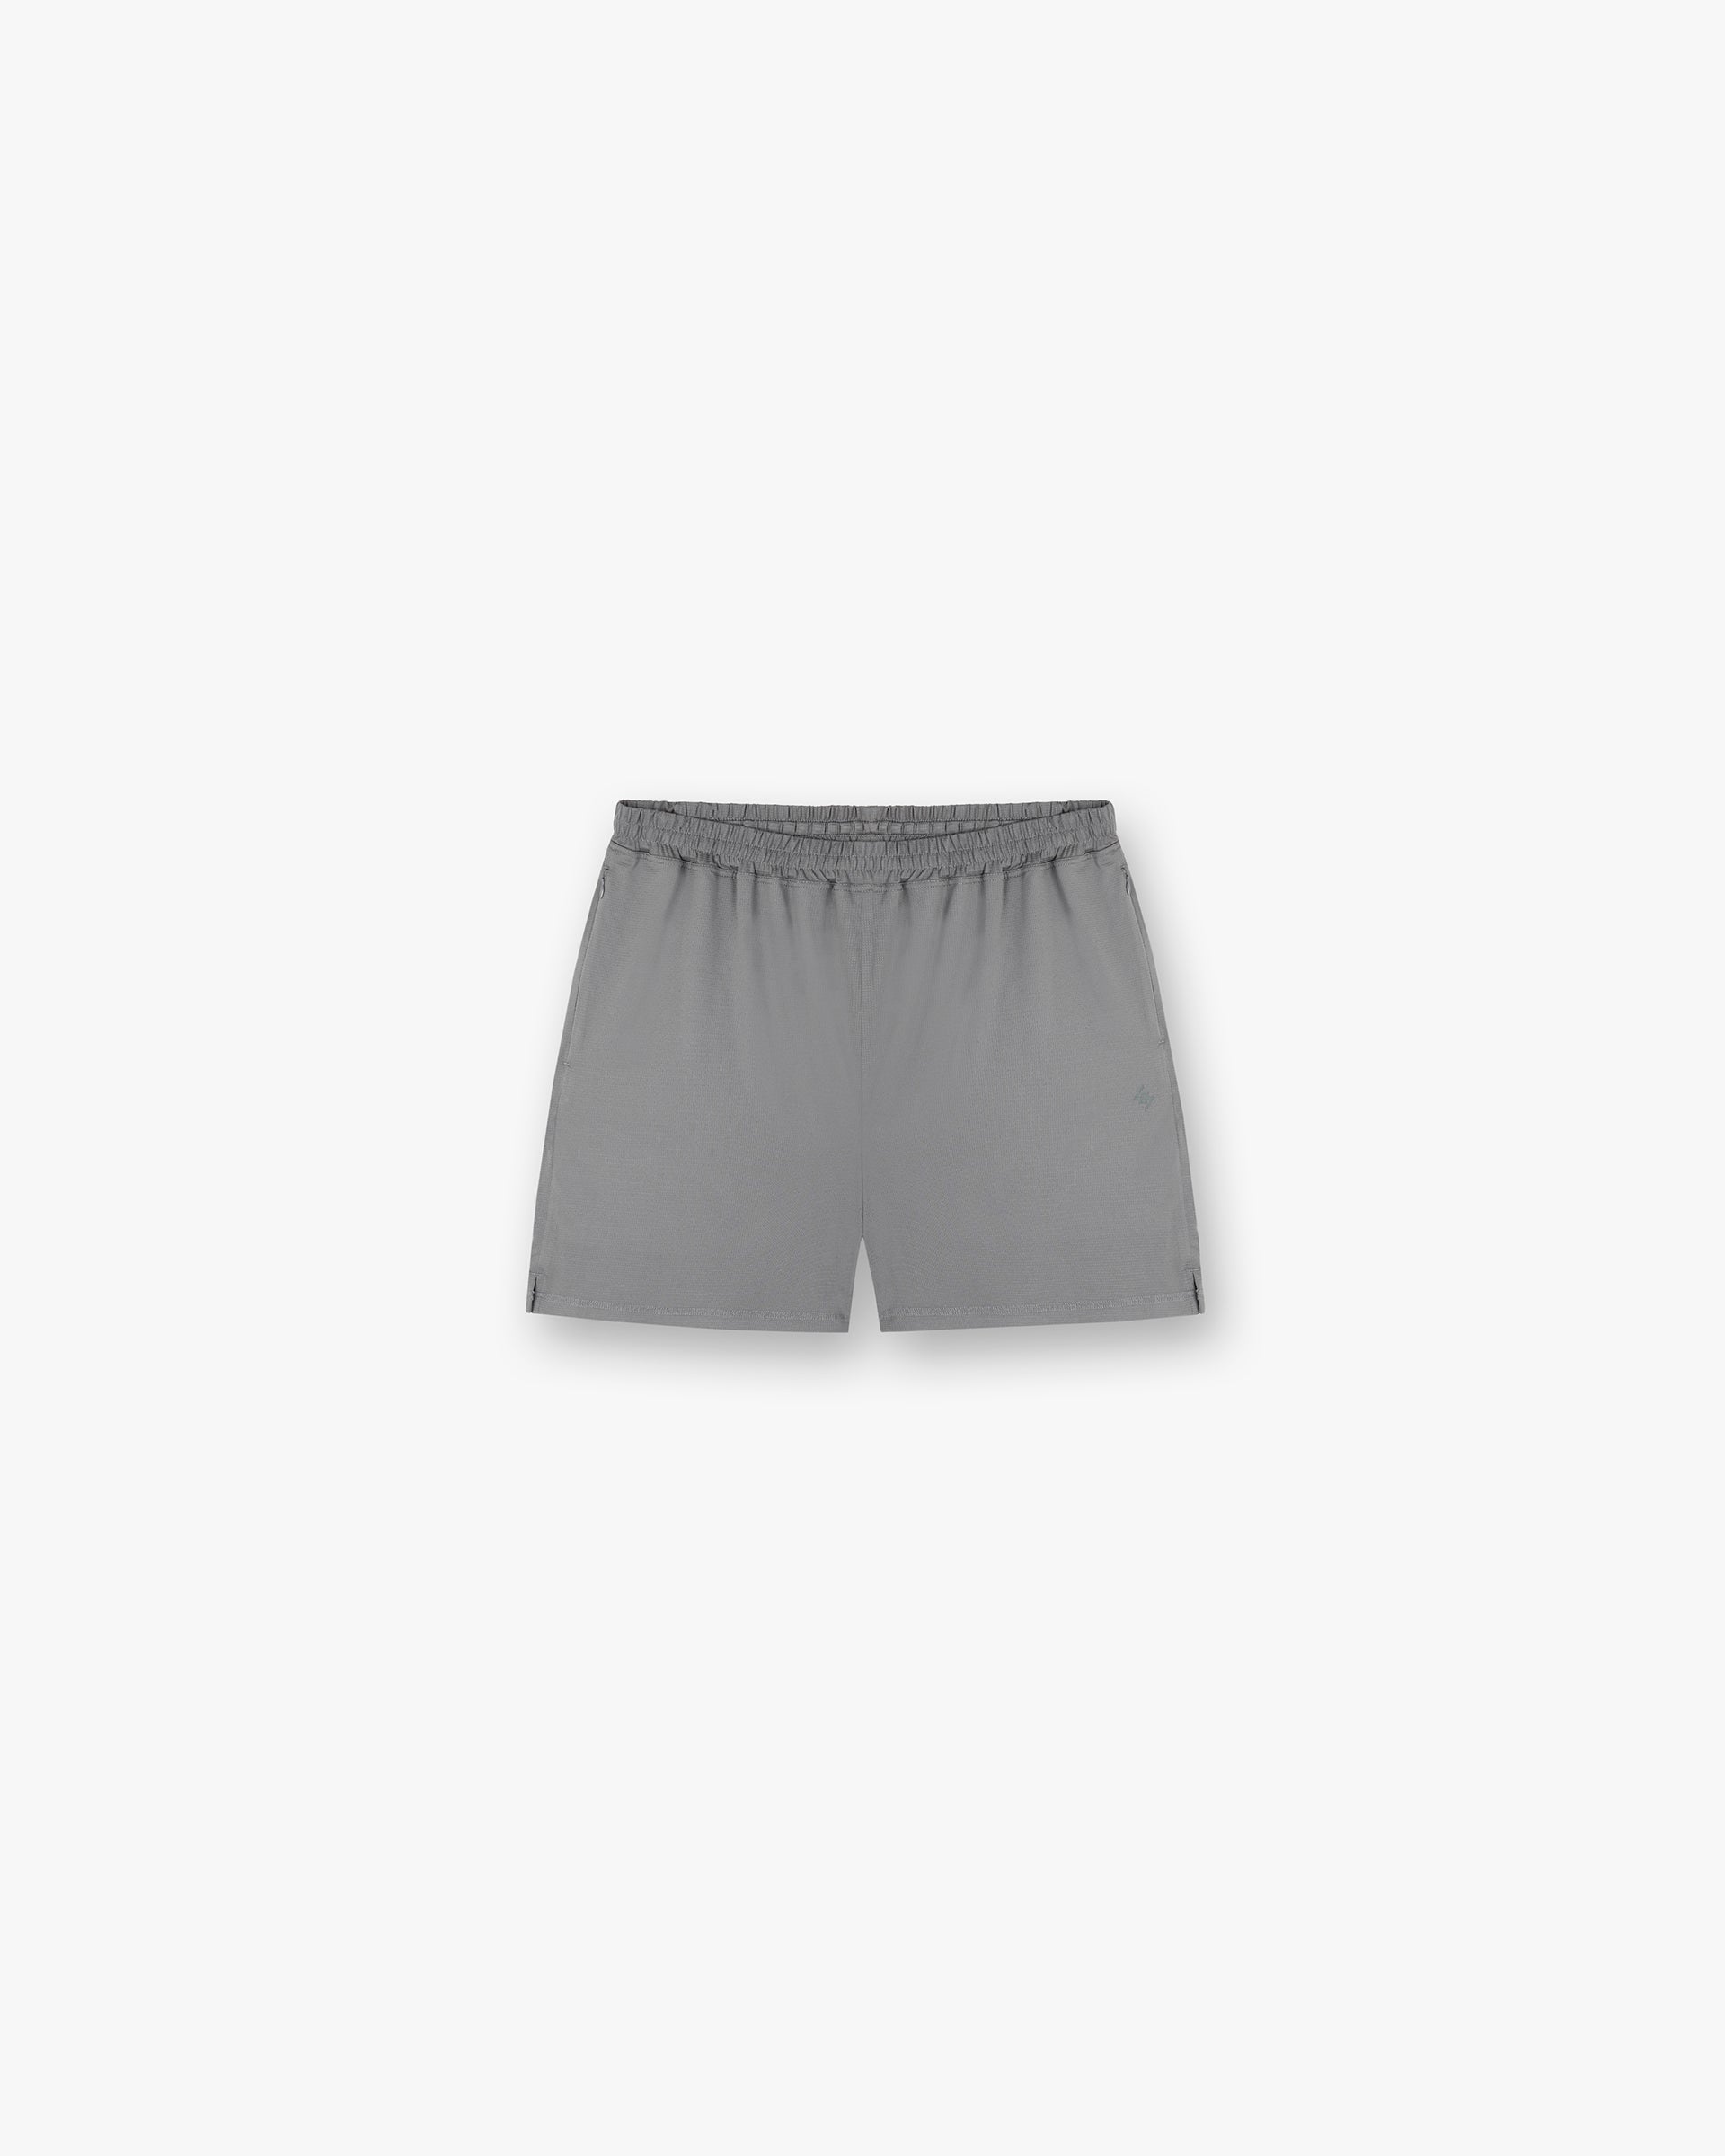 247 Mesh Shorts - Pewter